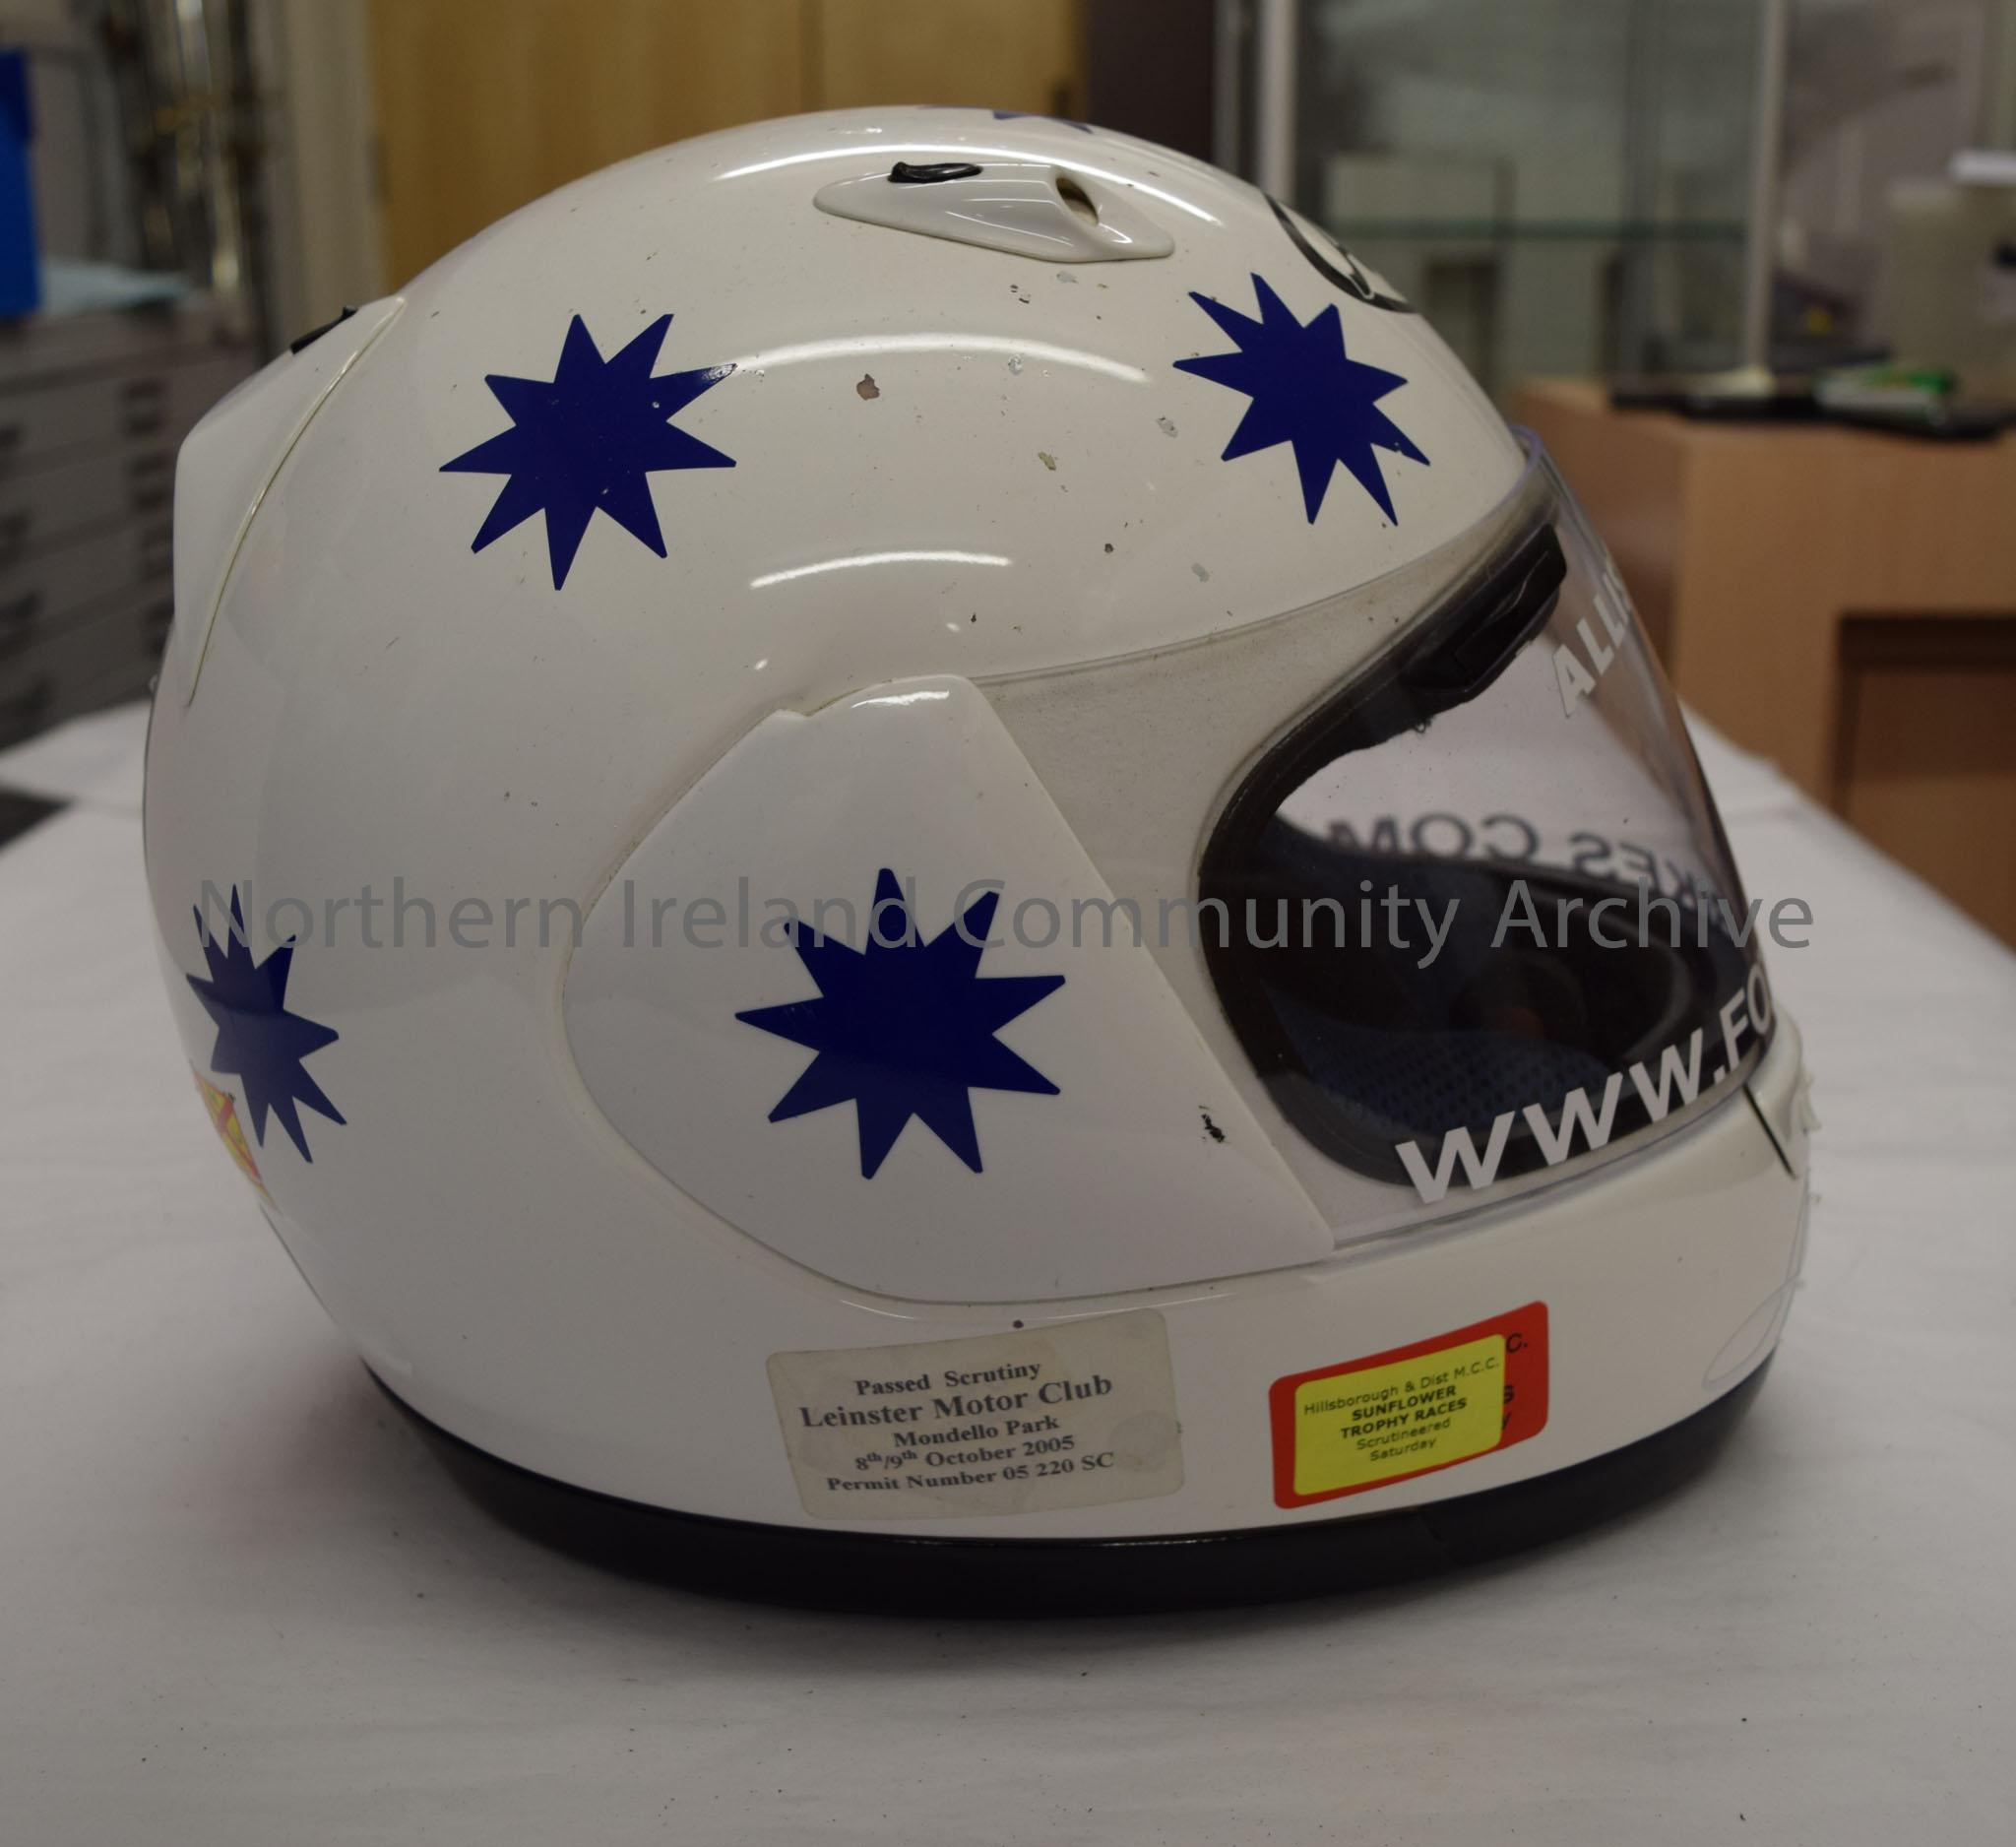 Arai motorcycle helmet belonging to Alastair Seeley. White helmet covered in blue stars. – 2016.91 (5)